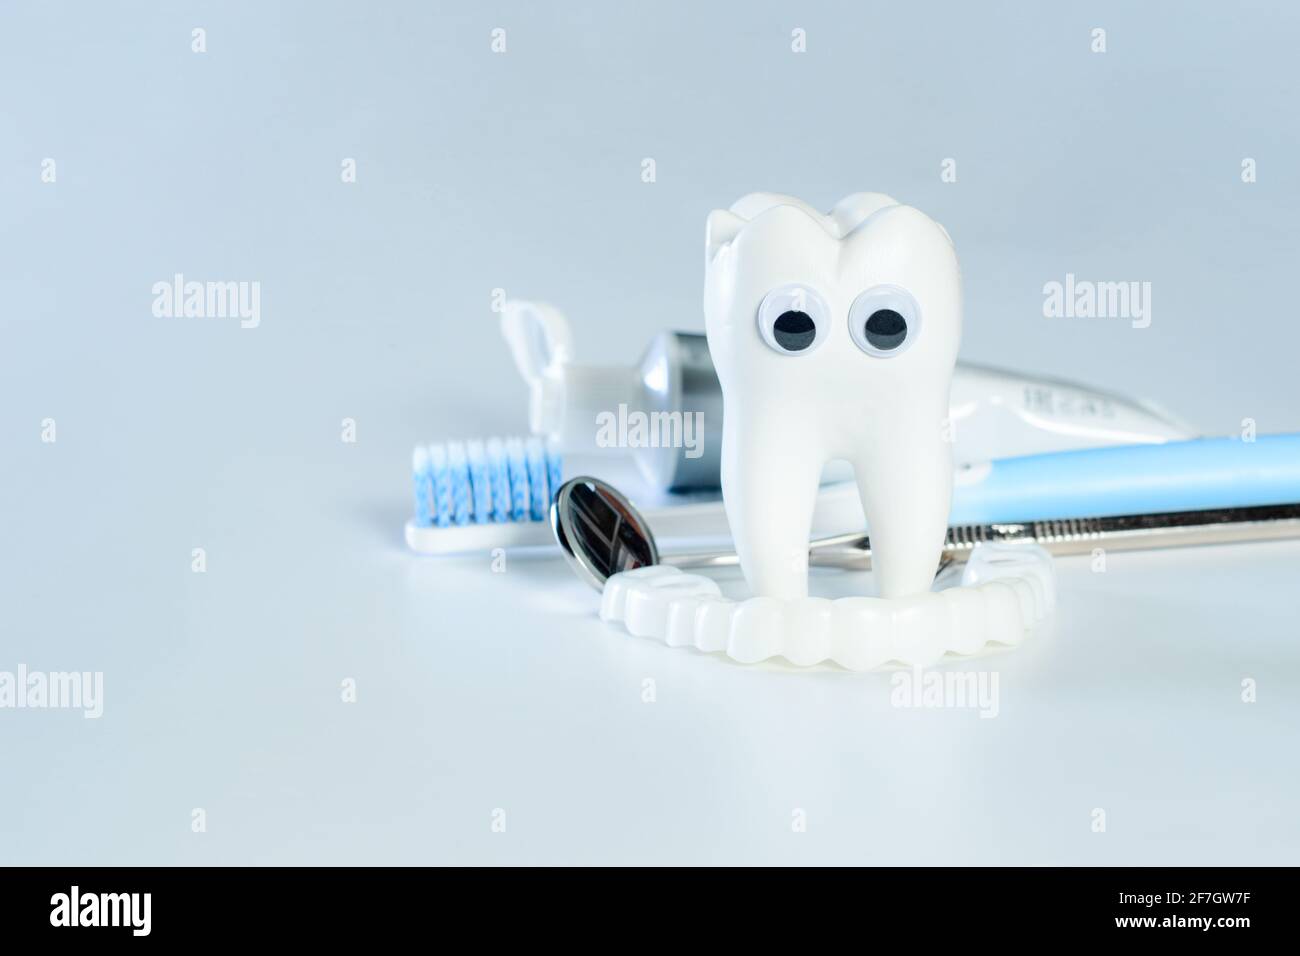 Weißer großer gesunder Zahn mit guten Augen schaut auf falsche Zähne. Daneben gibt es verschiedene Werkzeuge für die Zahnpflege. Stockfoto